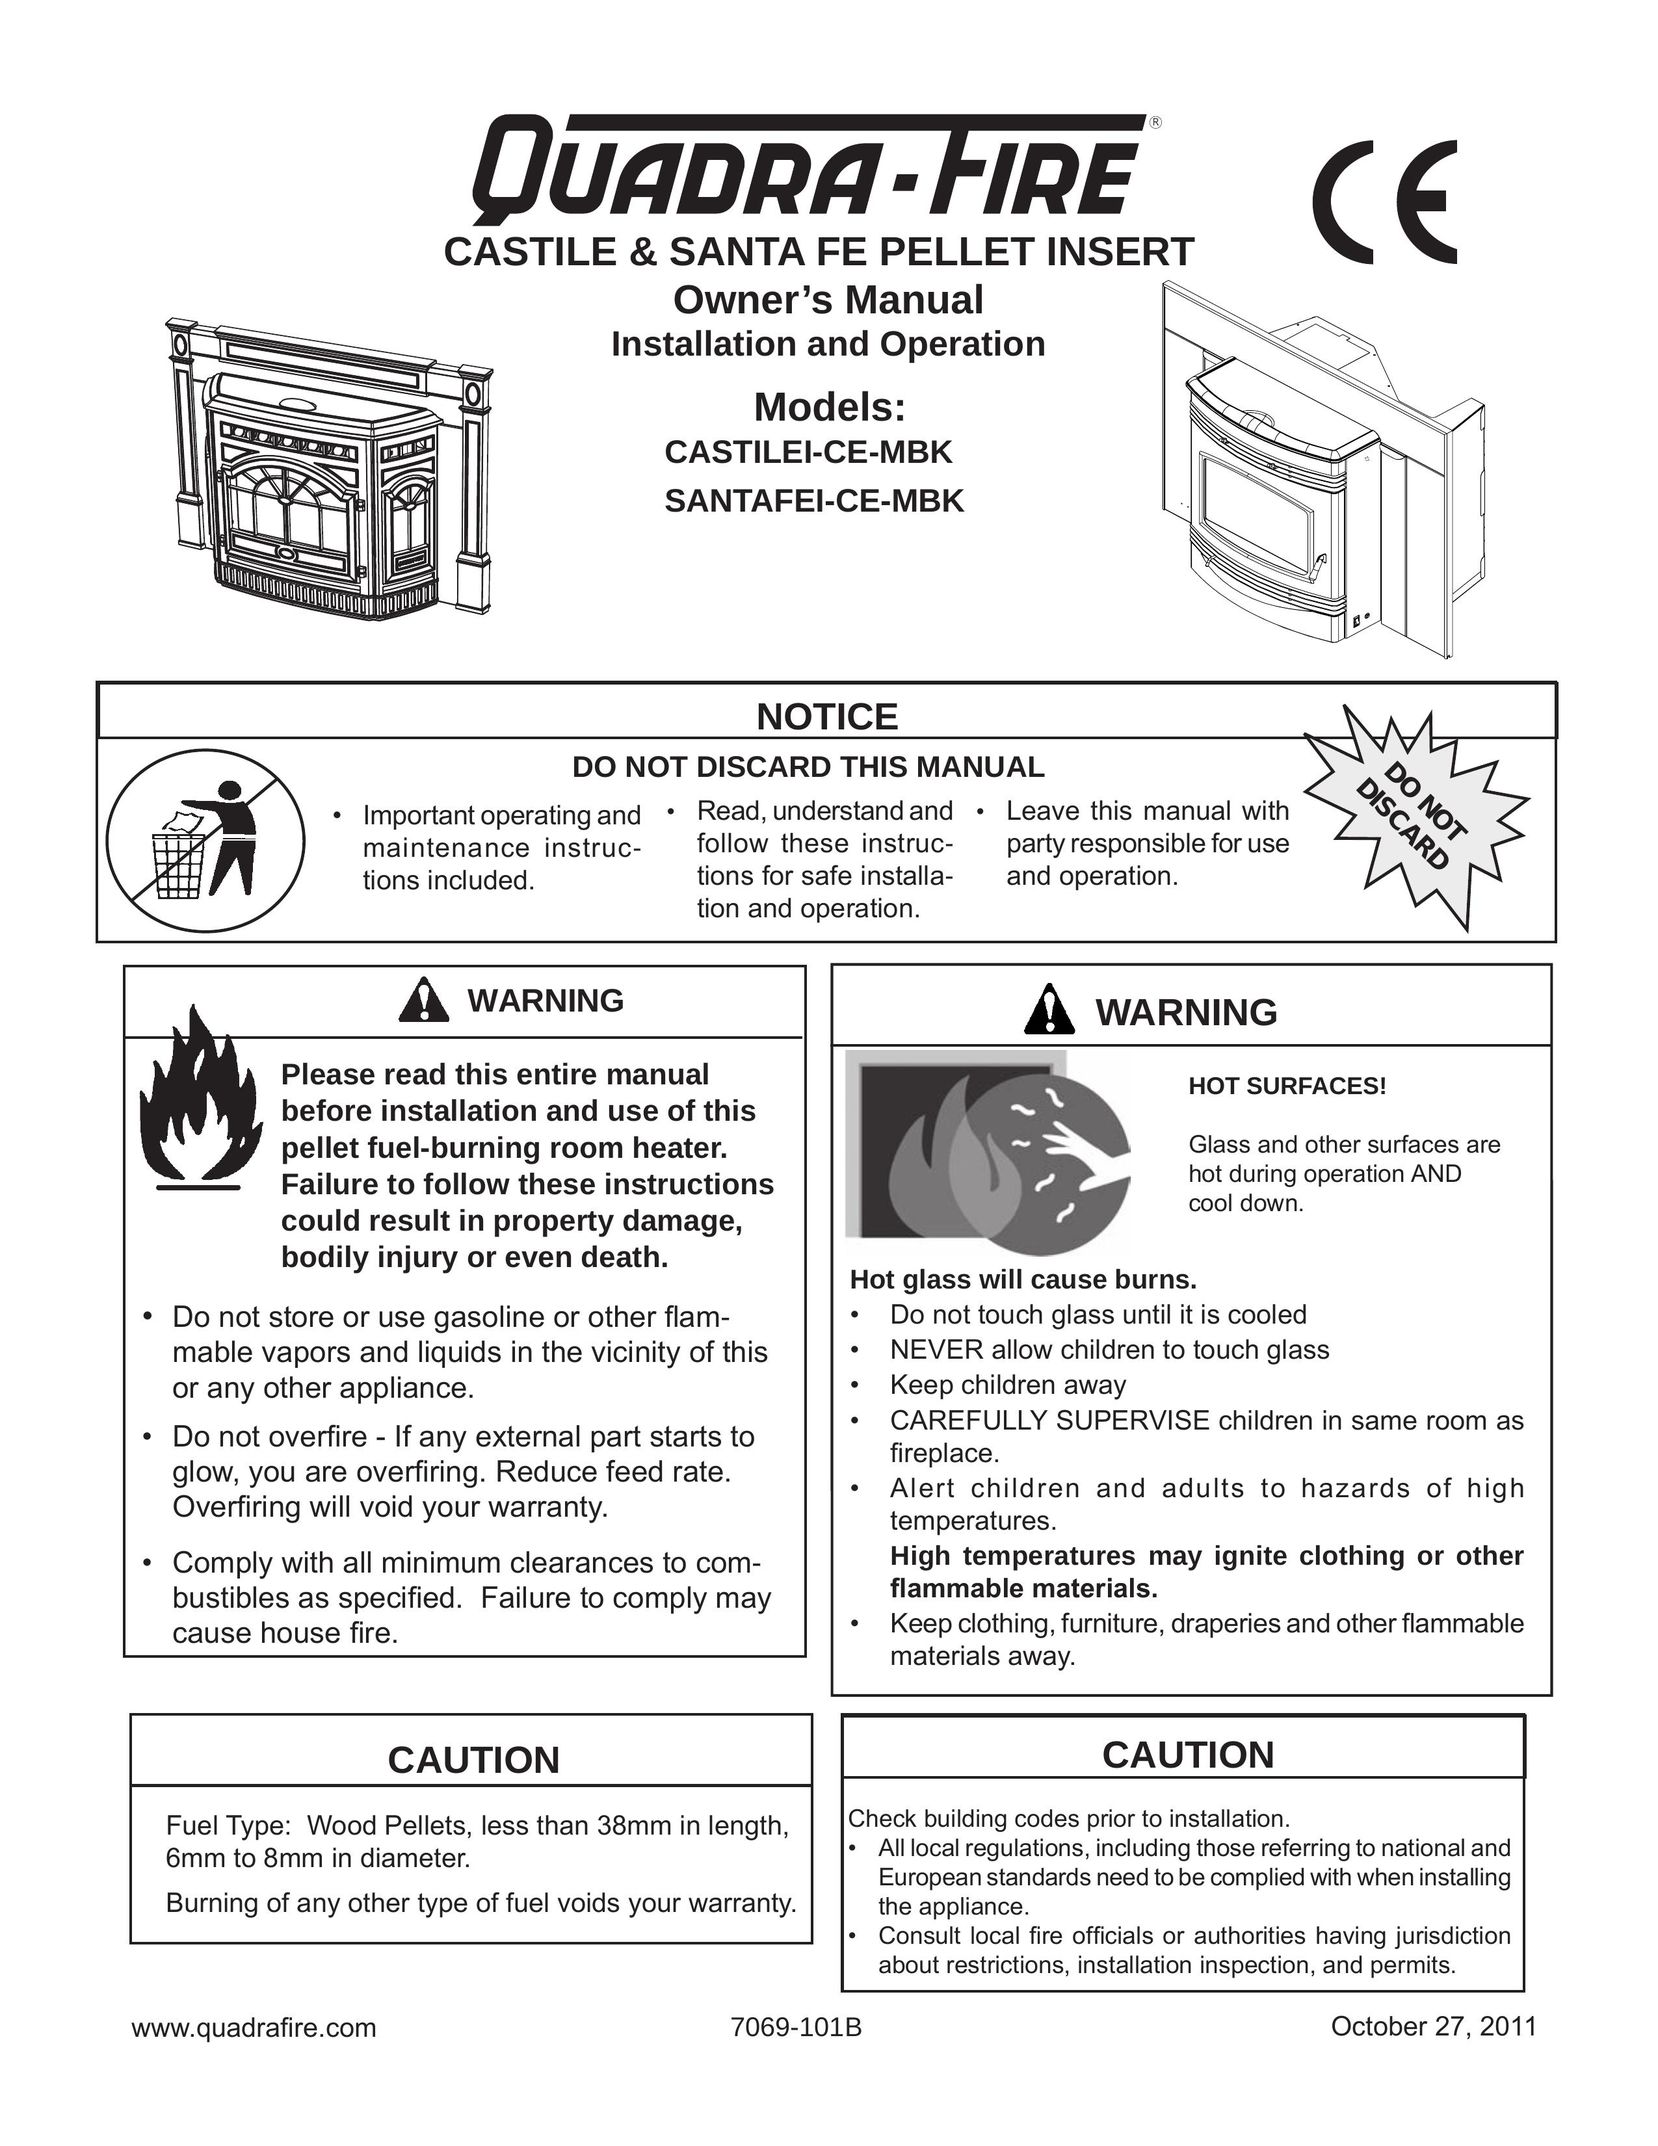 Quadra-Fire CASTILEI-CE-MBK Indoor Fireplace User Manual